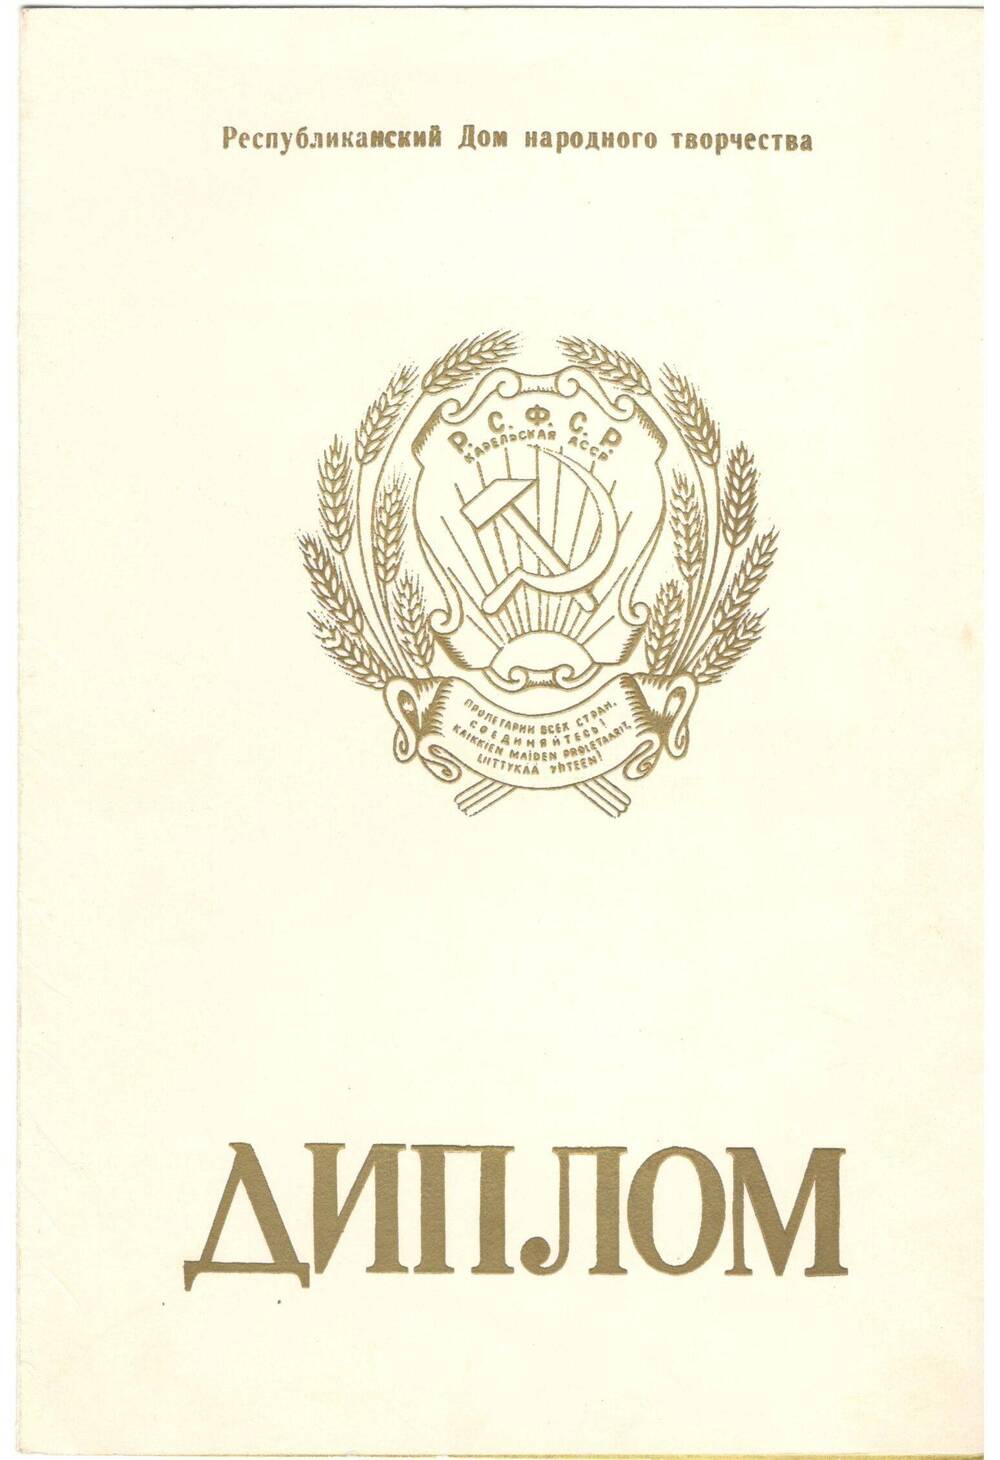 Диплом второй степени. Присужден Зеленину А.Н., 1973 г.